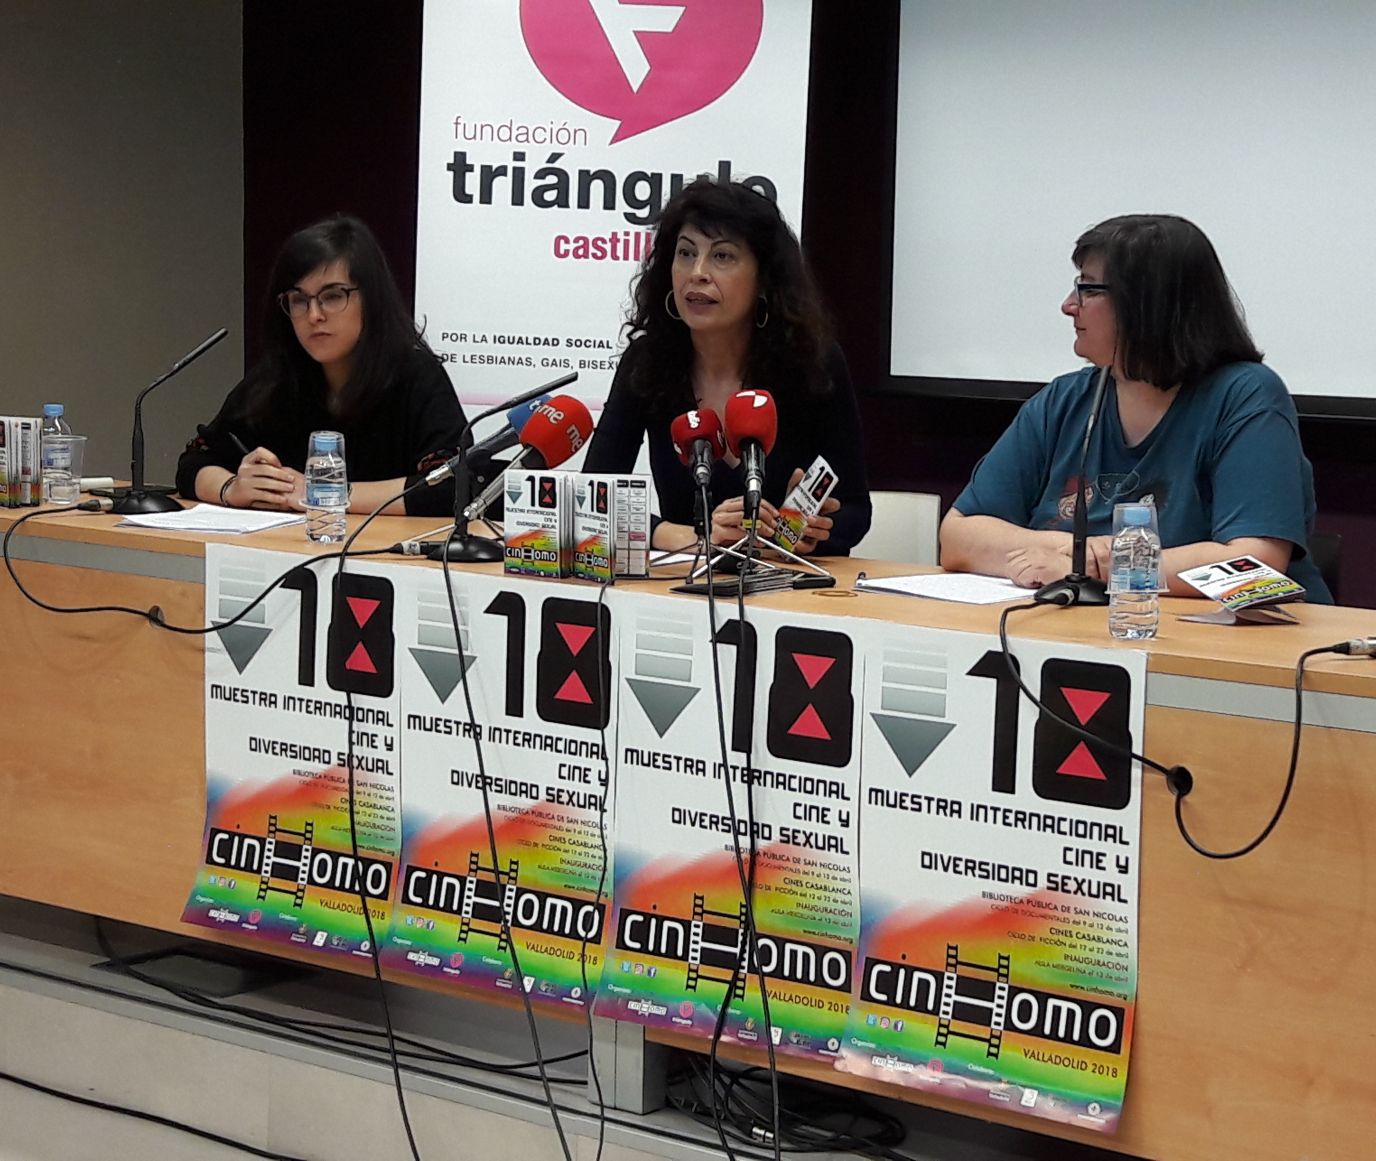 Fundación Triángulo celebra la 18ª edición de CINHOMO, su Muestra Internacional de Cine y Diversidad Sexual